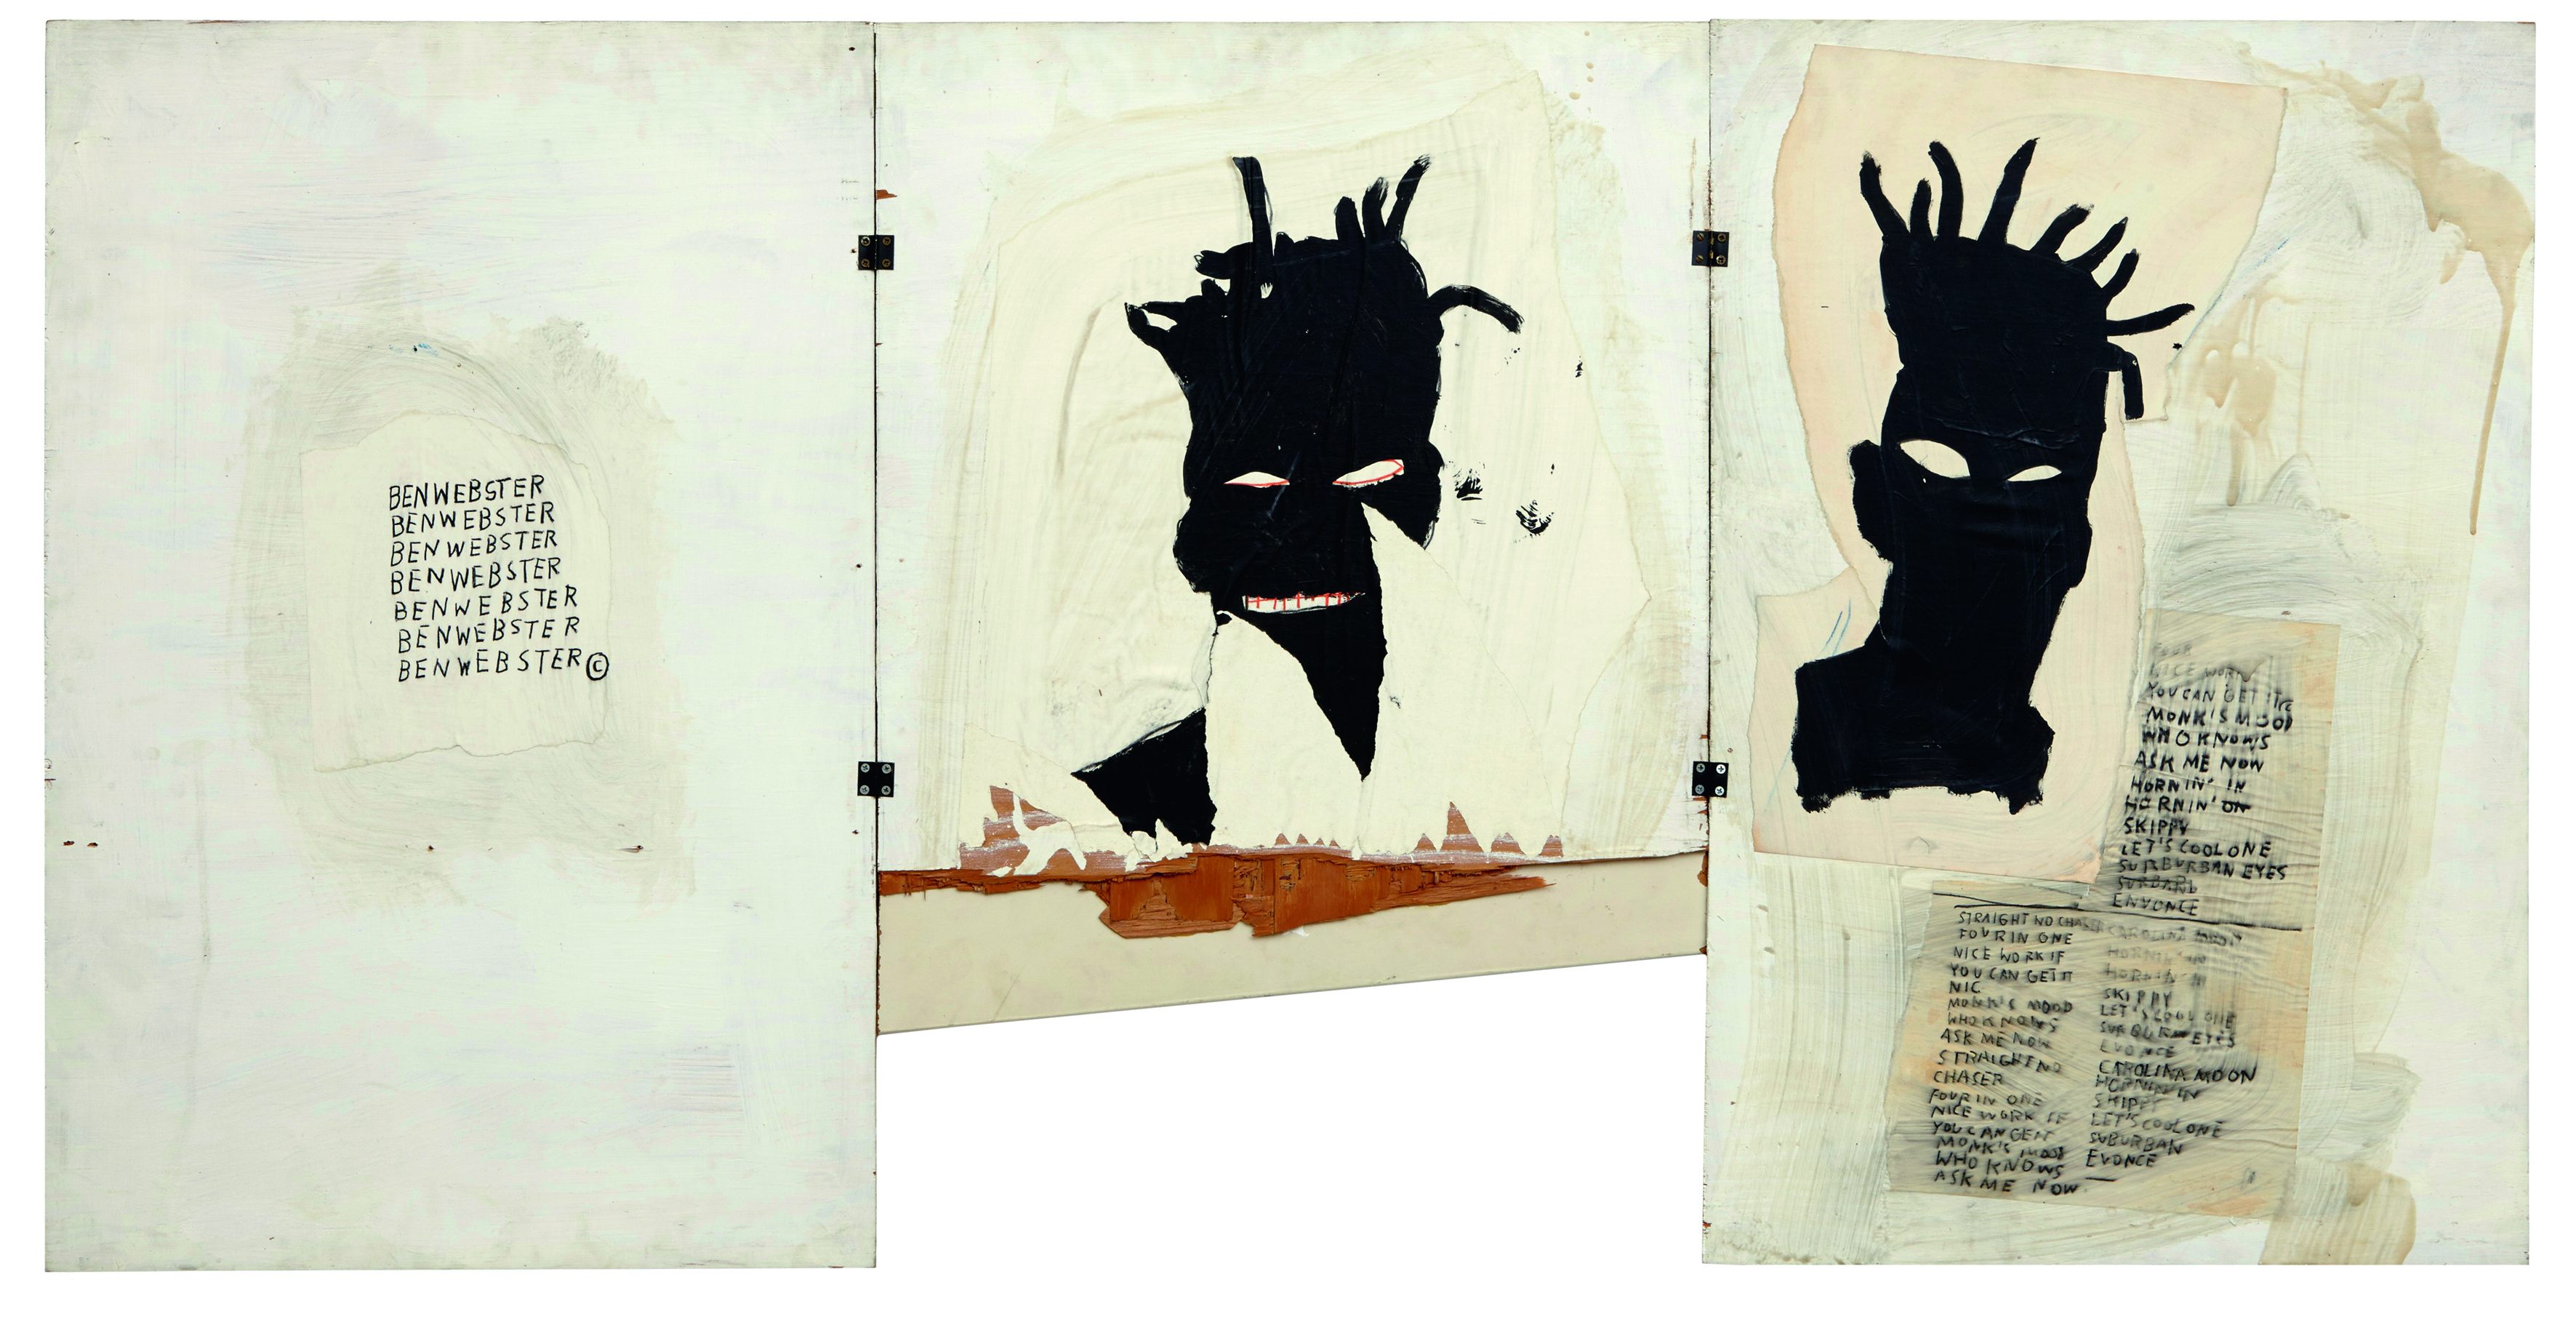 Jean-Michel Basquiat, Autoritratto, 1981, Acrilico, olio, pastello a olio e collage su tre tavole, cm 101,6 x 177,8, Mugrabi Collection © The Estate of Jean-Michel Basquiat by SIAE 2016